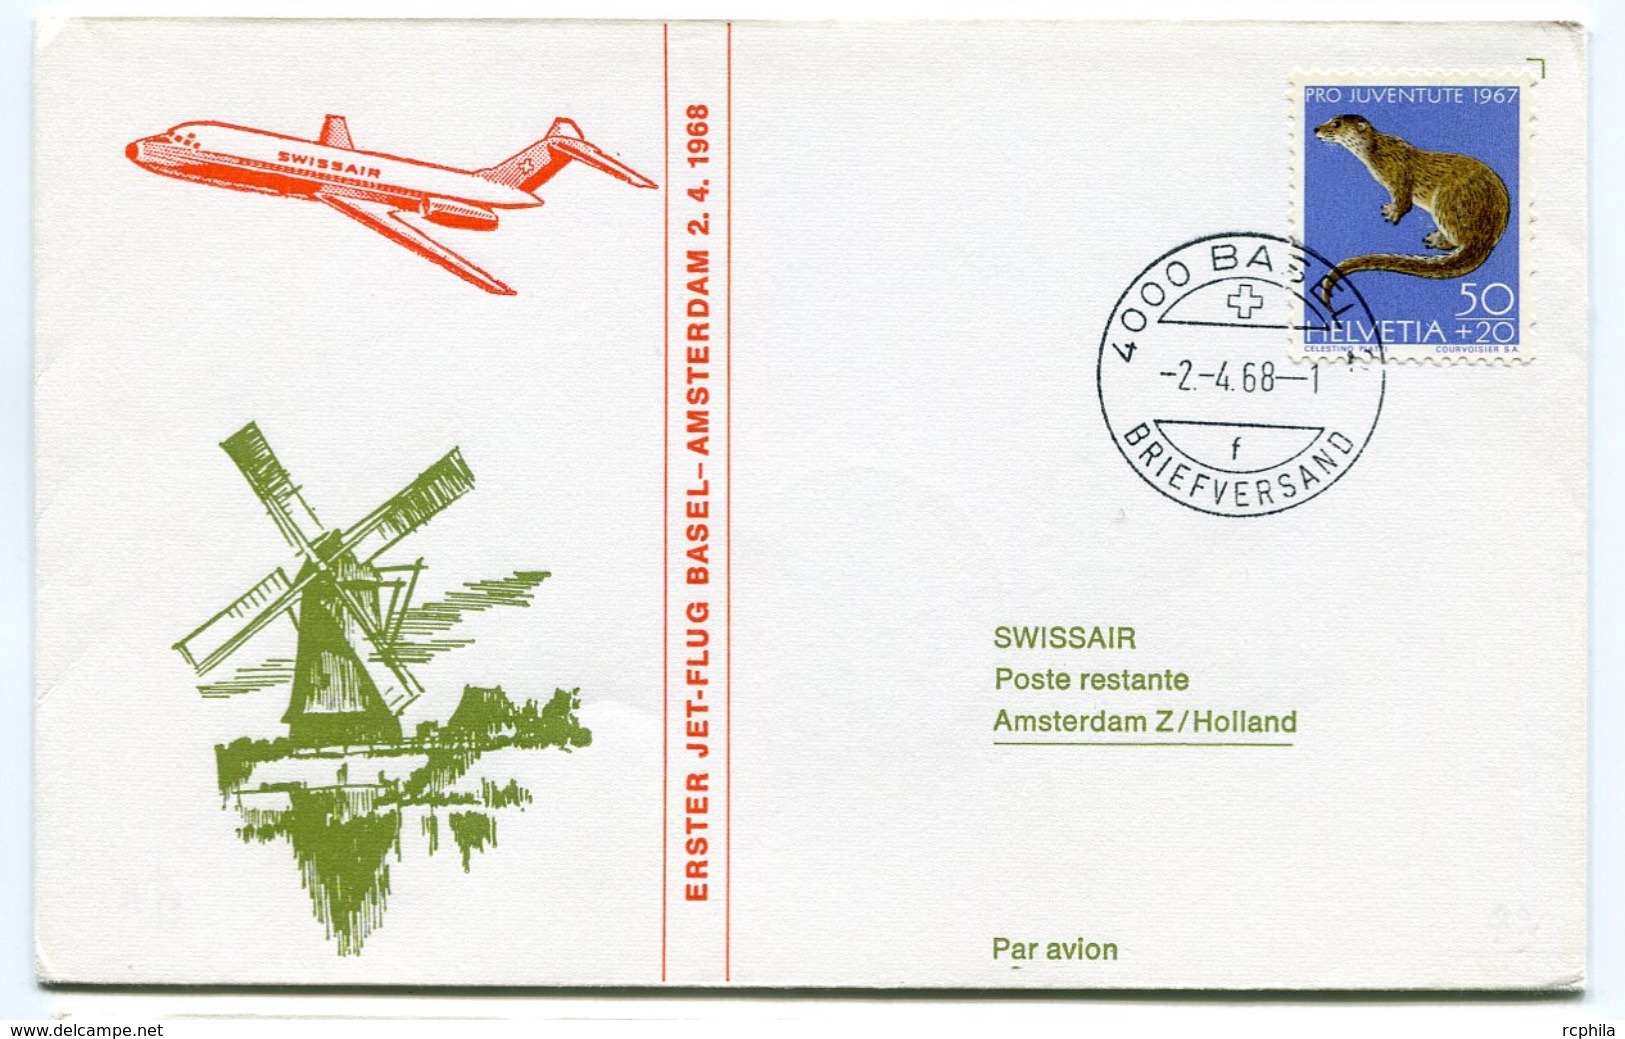 RC 6618 SUISSE 1968 1er VOL SWISSAIR BASEL - AMSTERDAM PAYS BAS FFC LETTRE COVER - Erst- U. Sonderflugbriefe